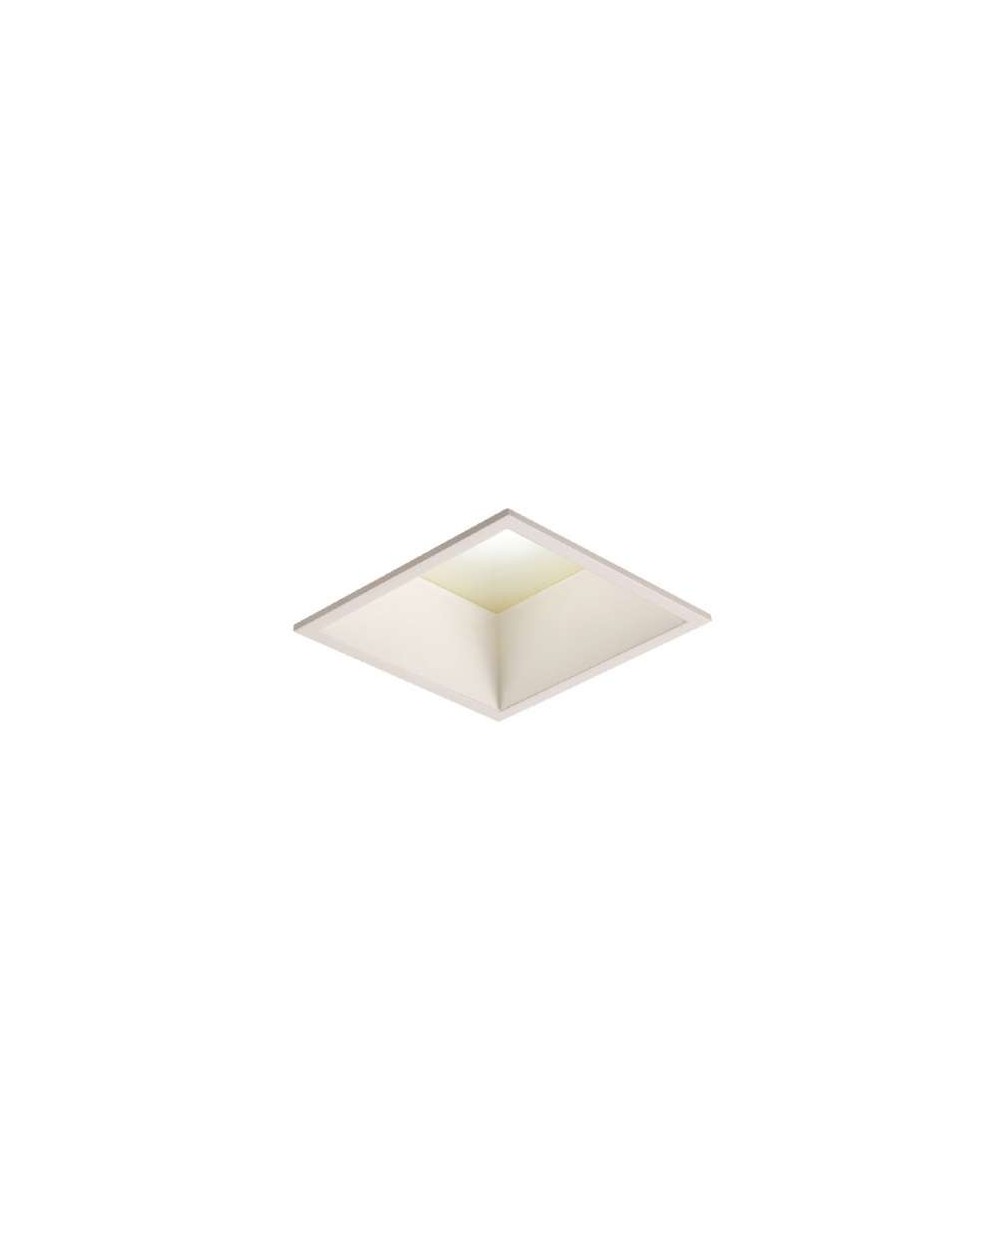 Lampa sufitowa miniSQUARE WP IP44 - Mistic Lighting oprawa wpuszczana kwadratowa typu downlight do zabudowy w sufitach biała 